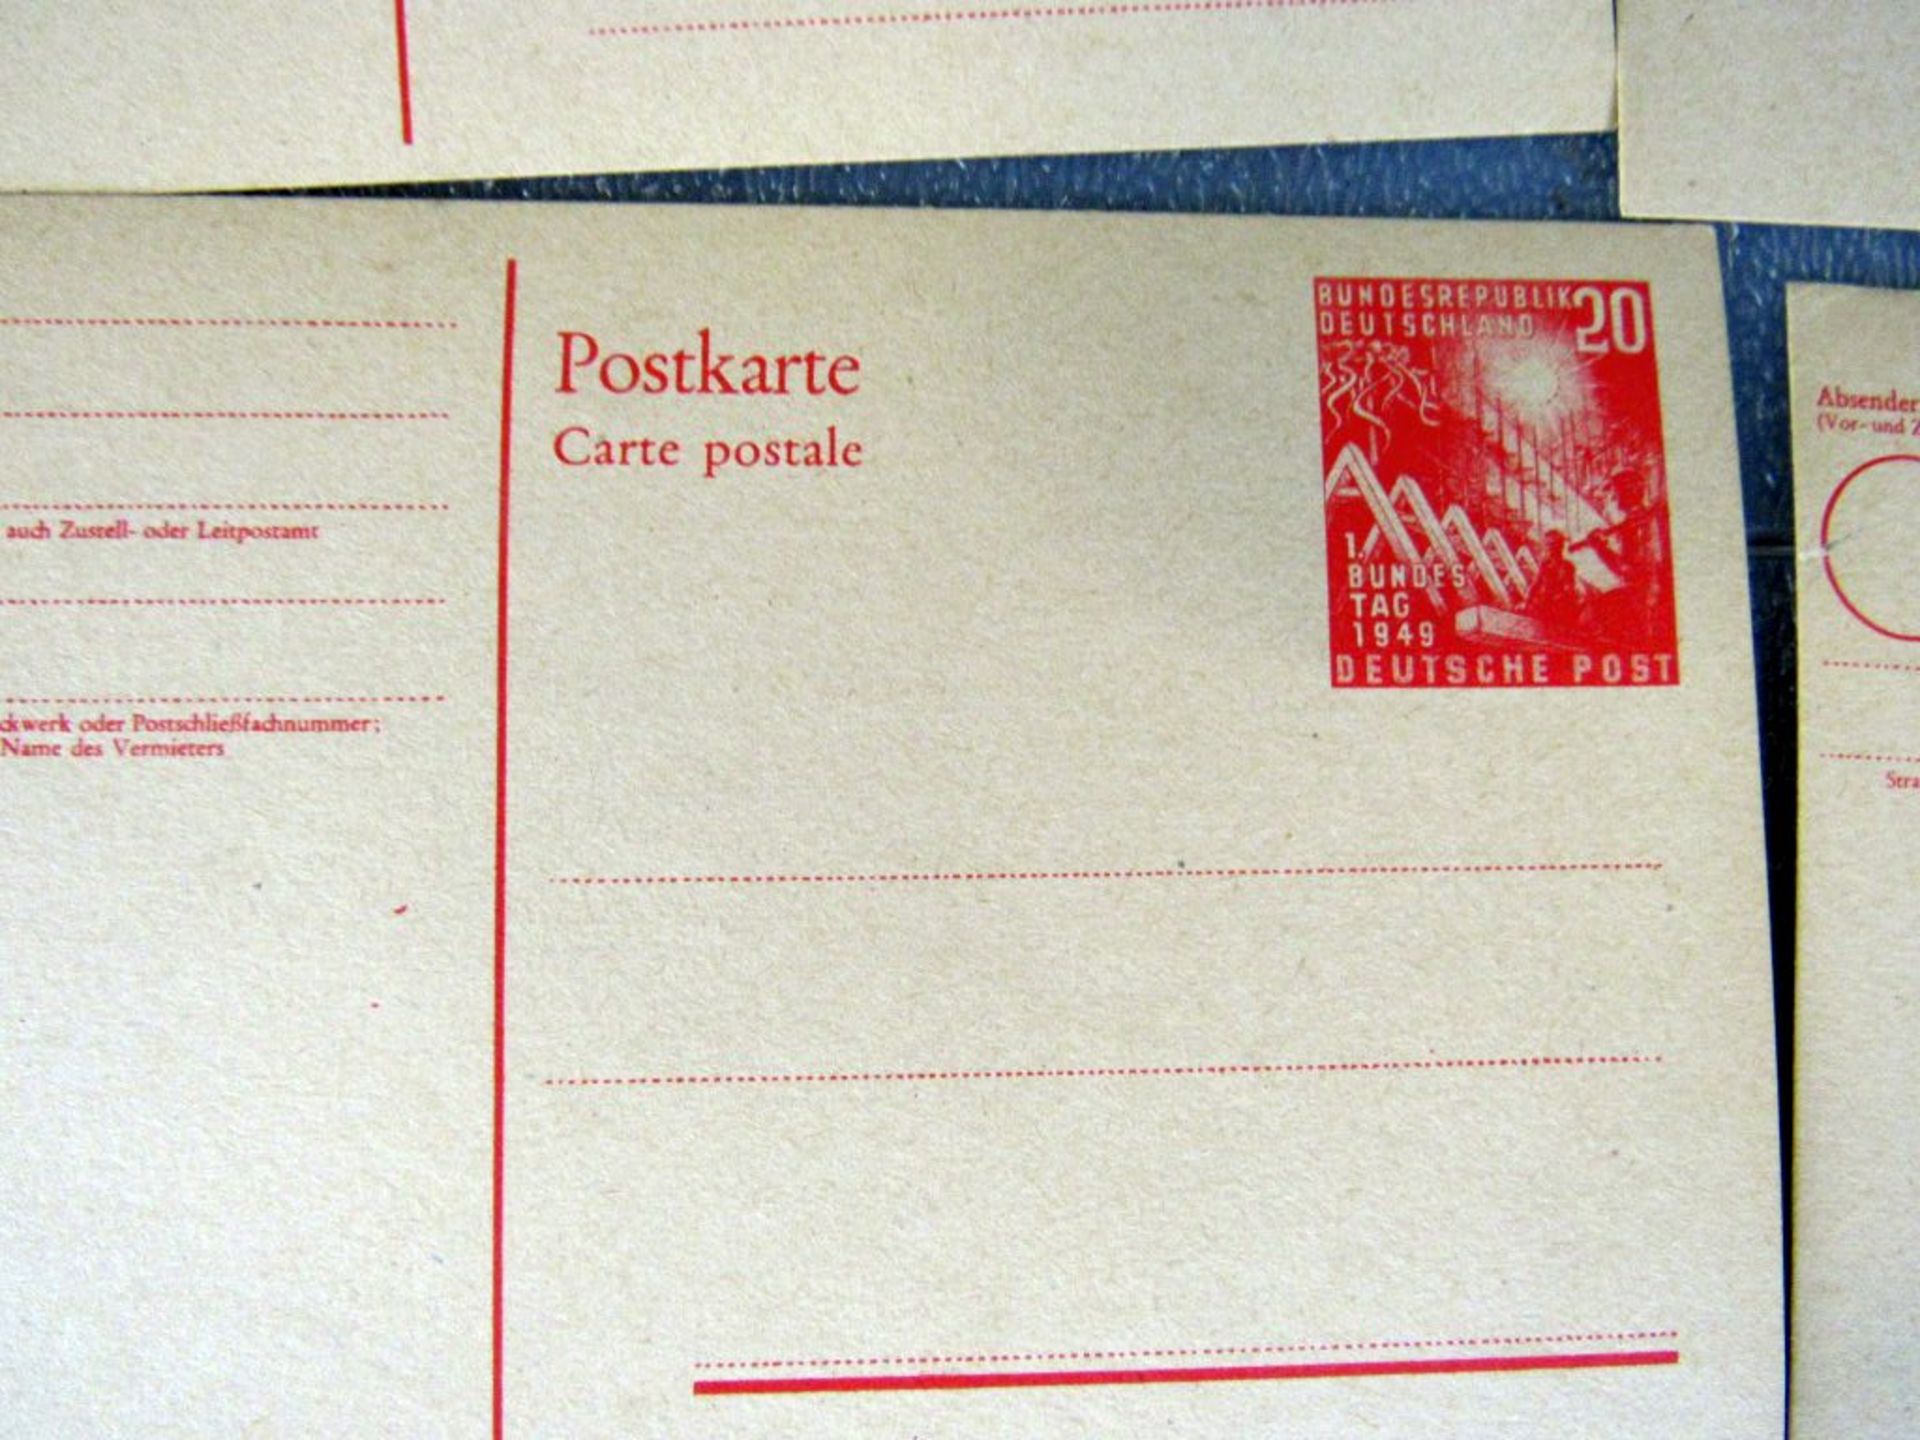 10 Postkarten deutsche Post 20 Pfennig - Image 3 of 4